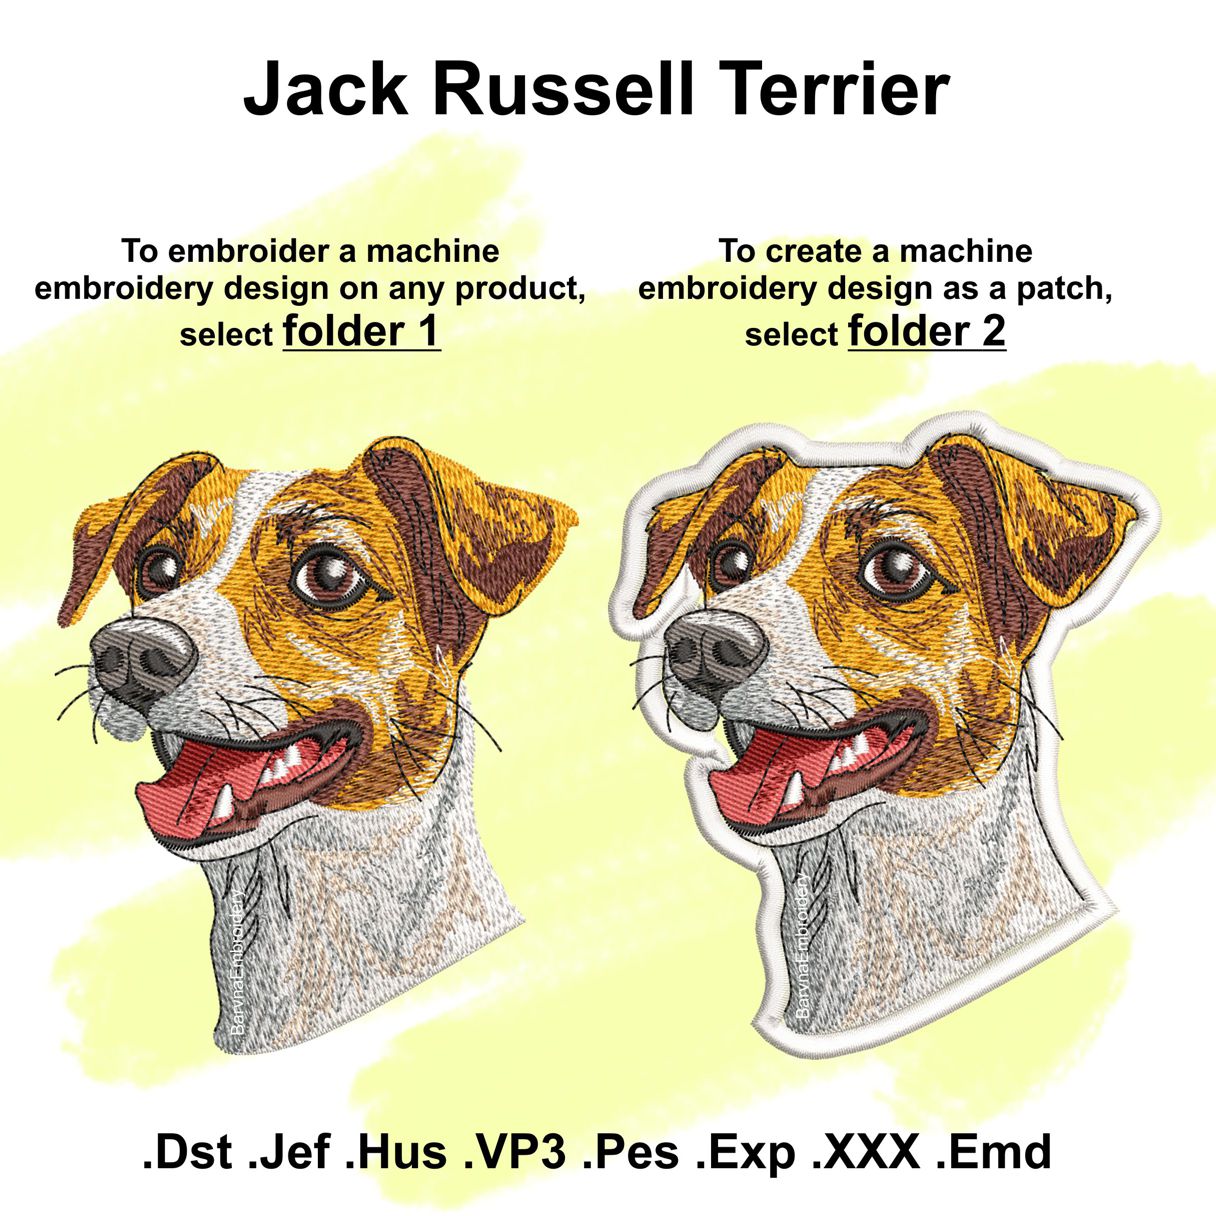 Jack Russell Terrier Patch Stickmuster für die Maschine.